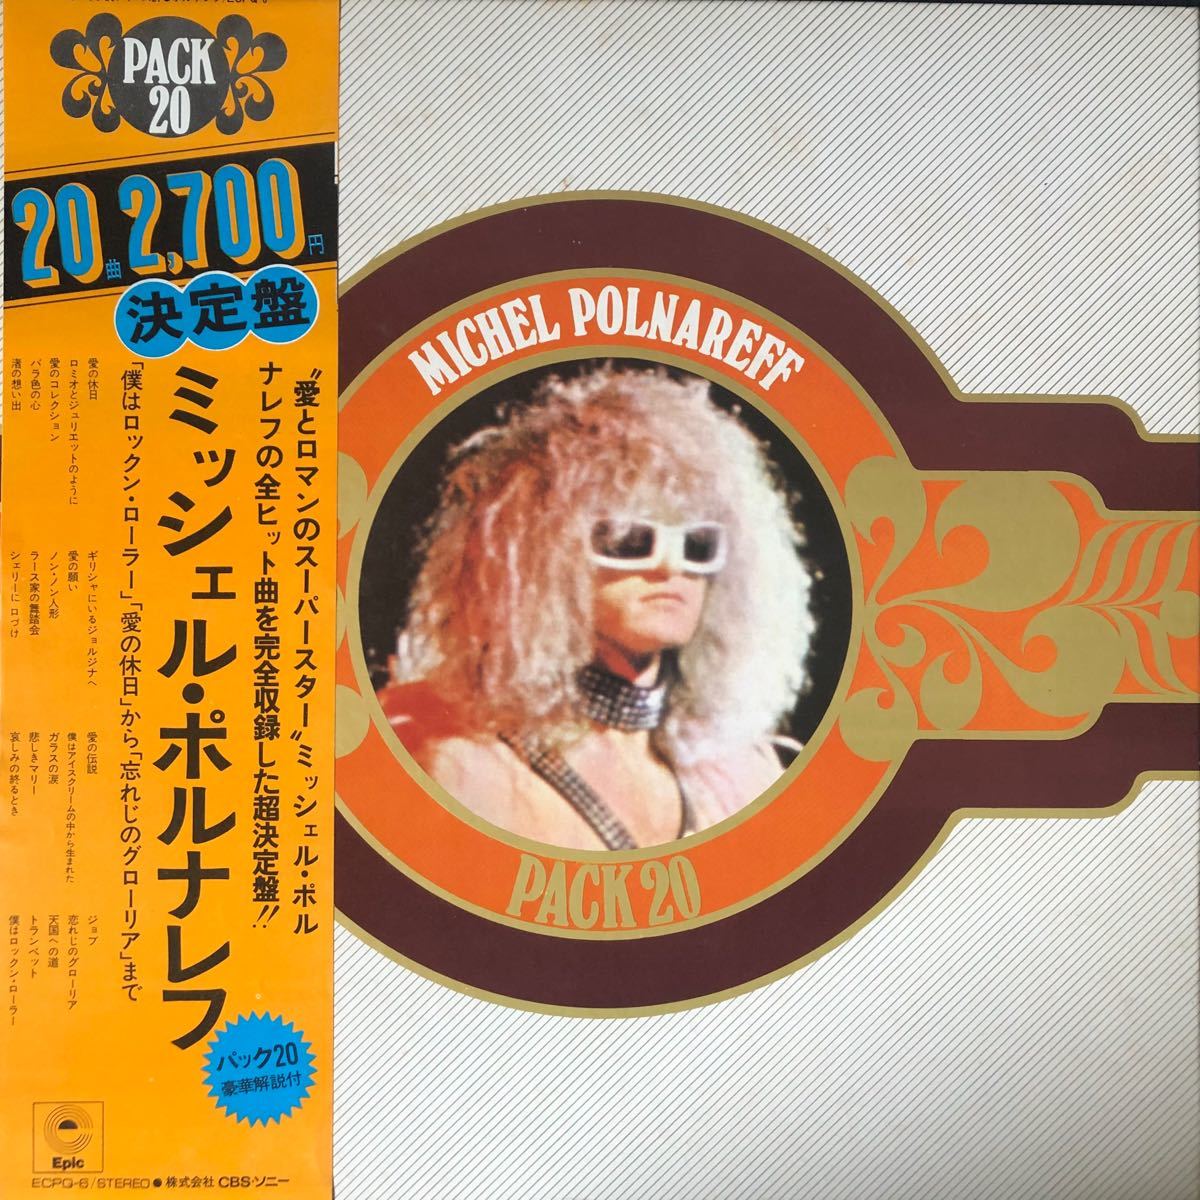 【おまとめ割引あり】ミッシェル・ポルナレフ Michel Polnareff PACK ヒット曲収録超決定盤 LPレコード